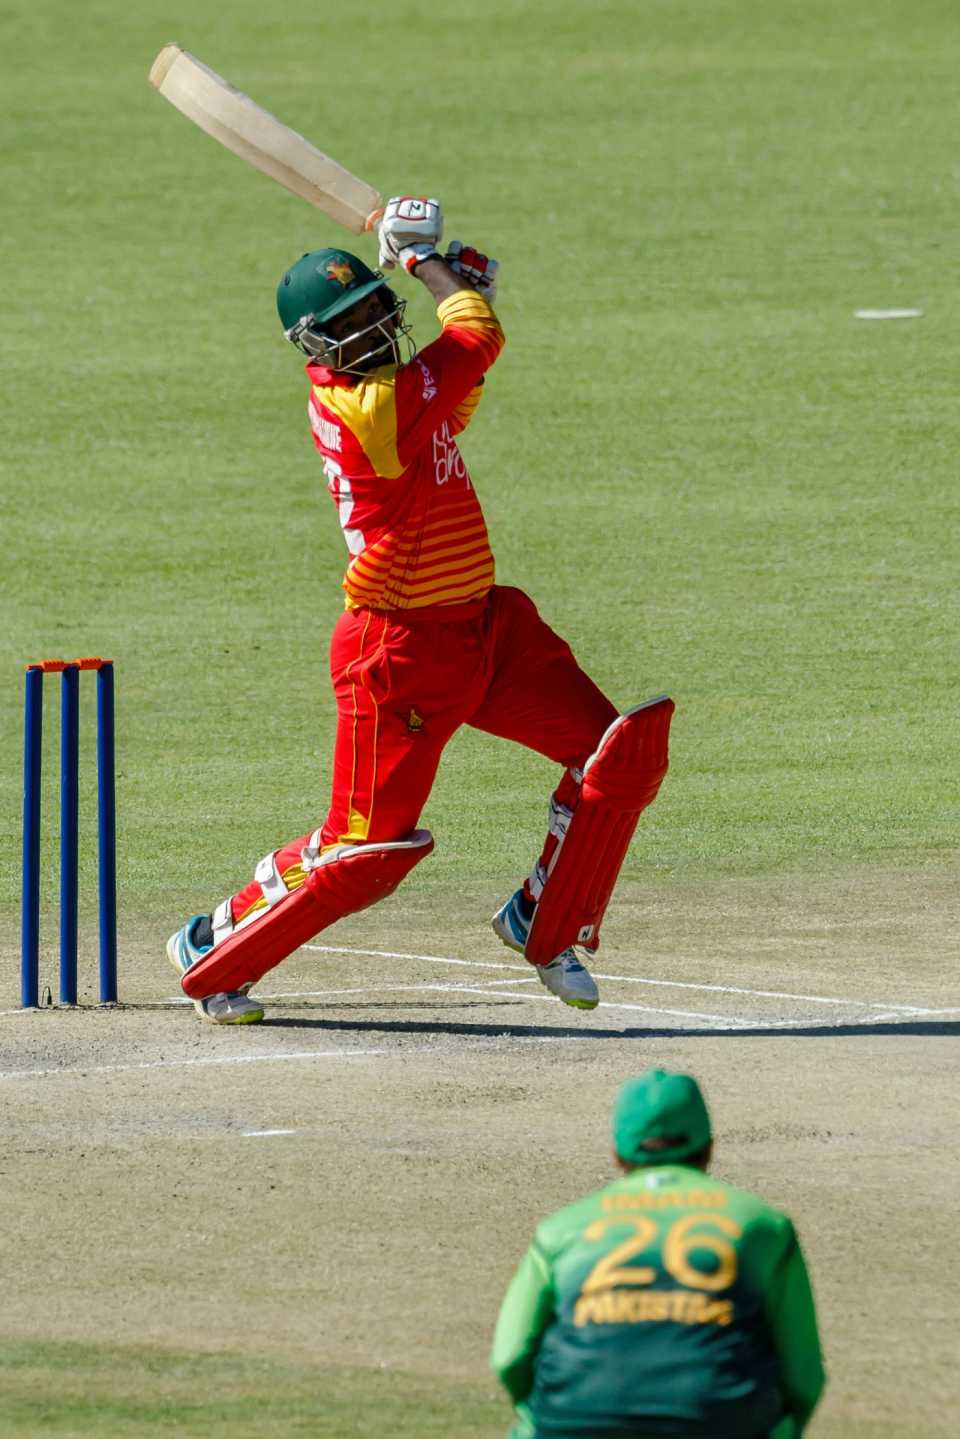 Tinashe Kamunhukamwe struck his highest ODI score